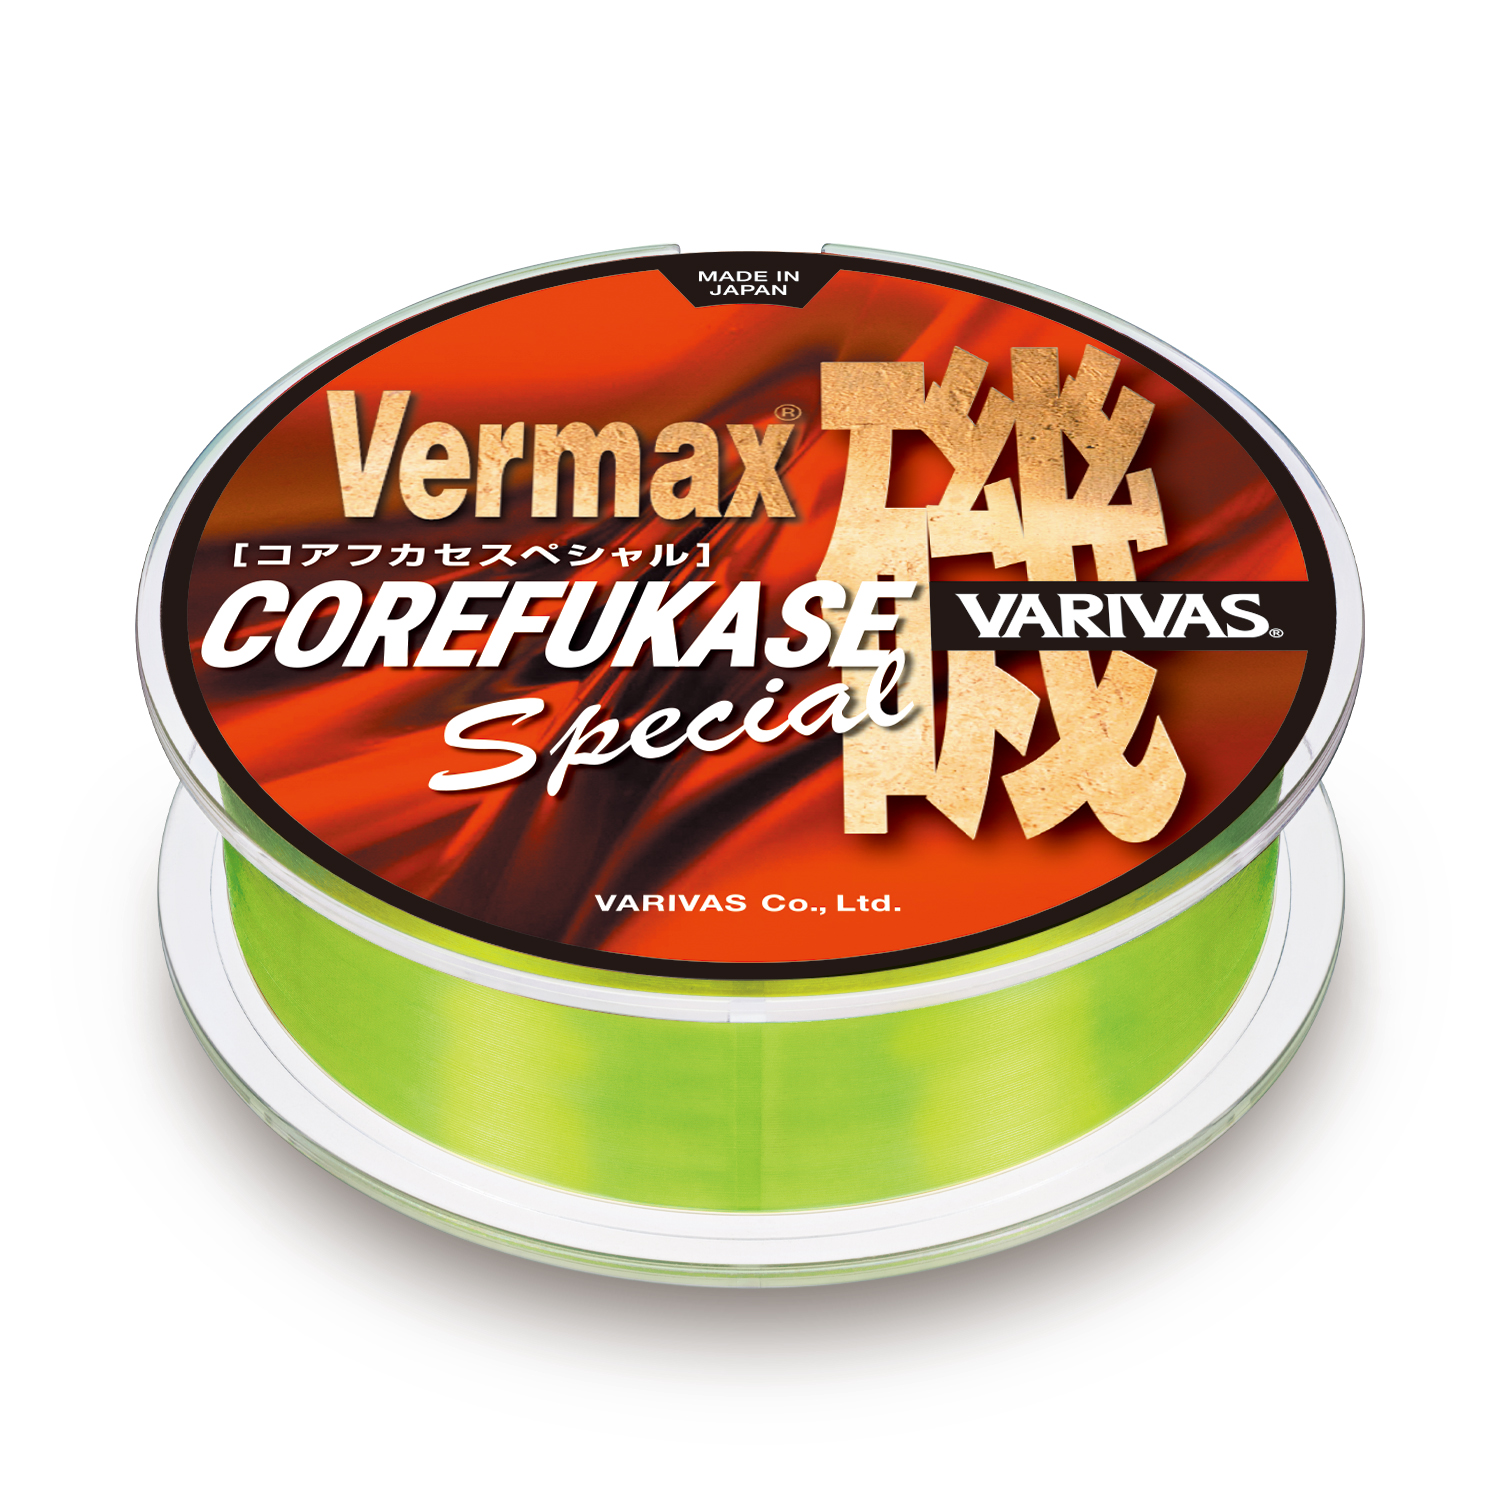 Vermax Iso Core Fukase Special